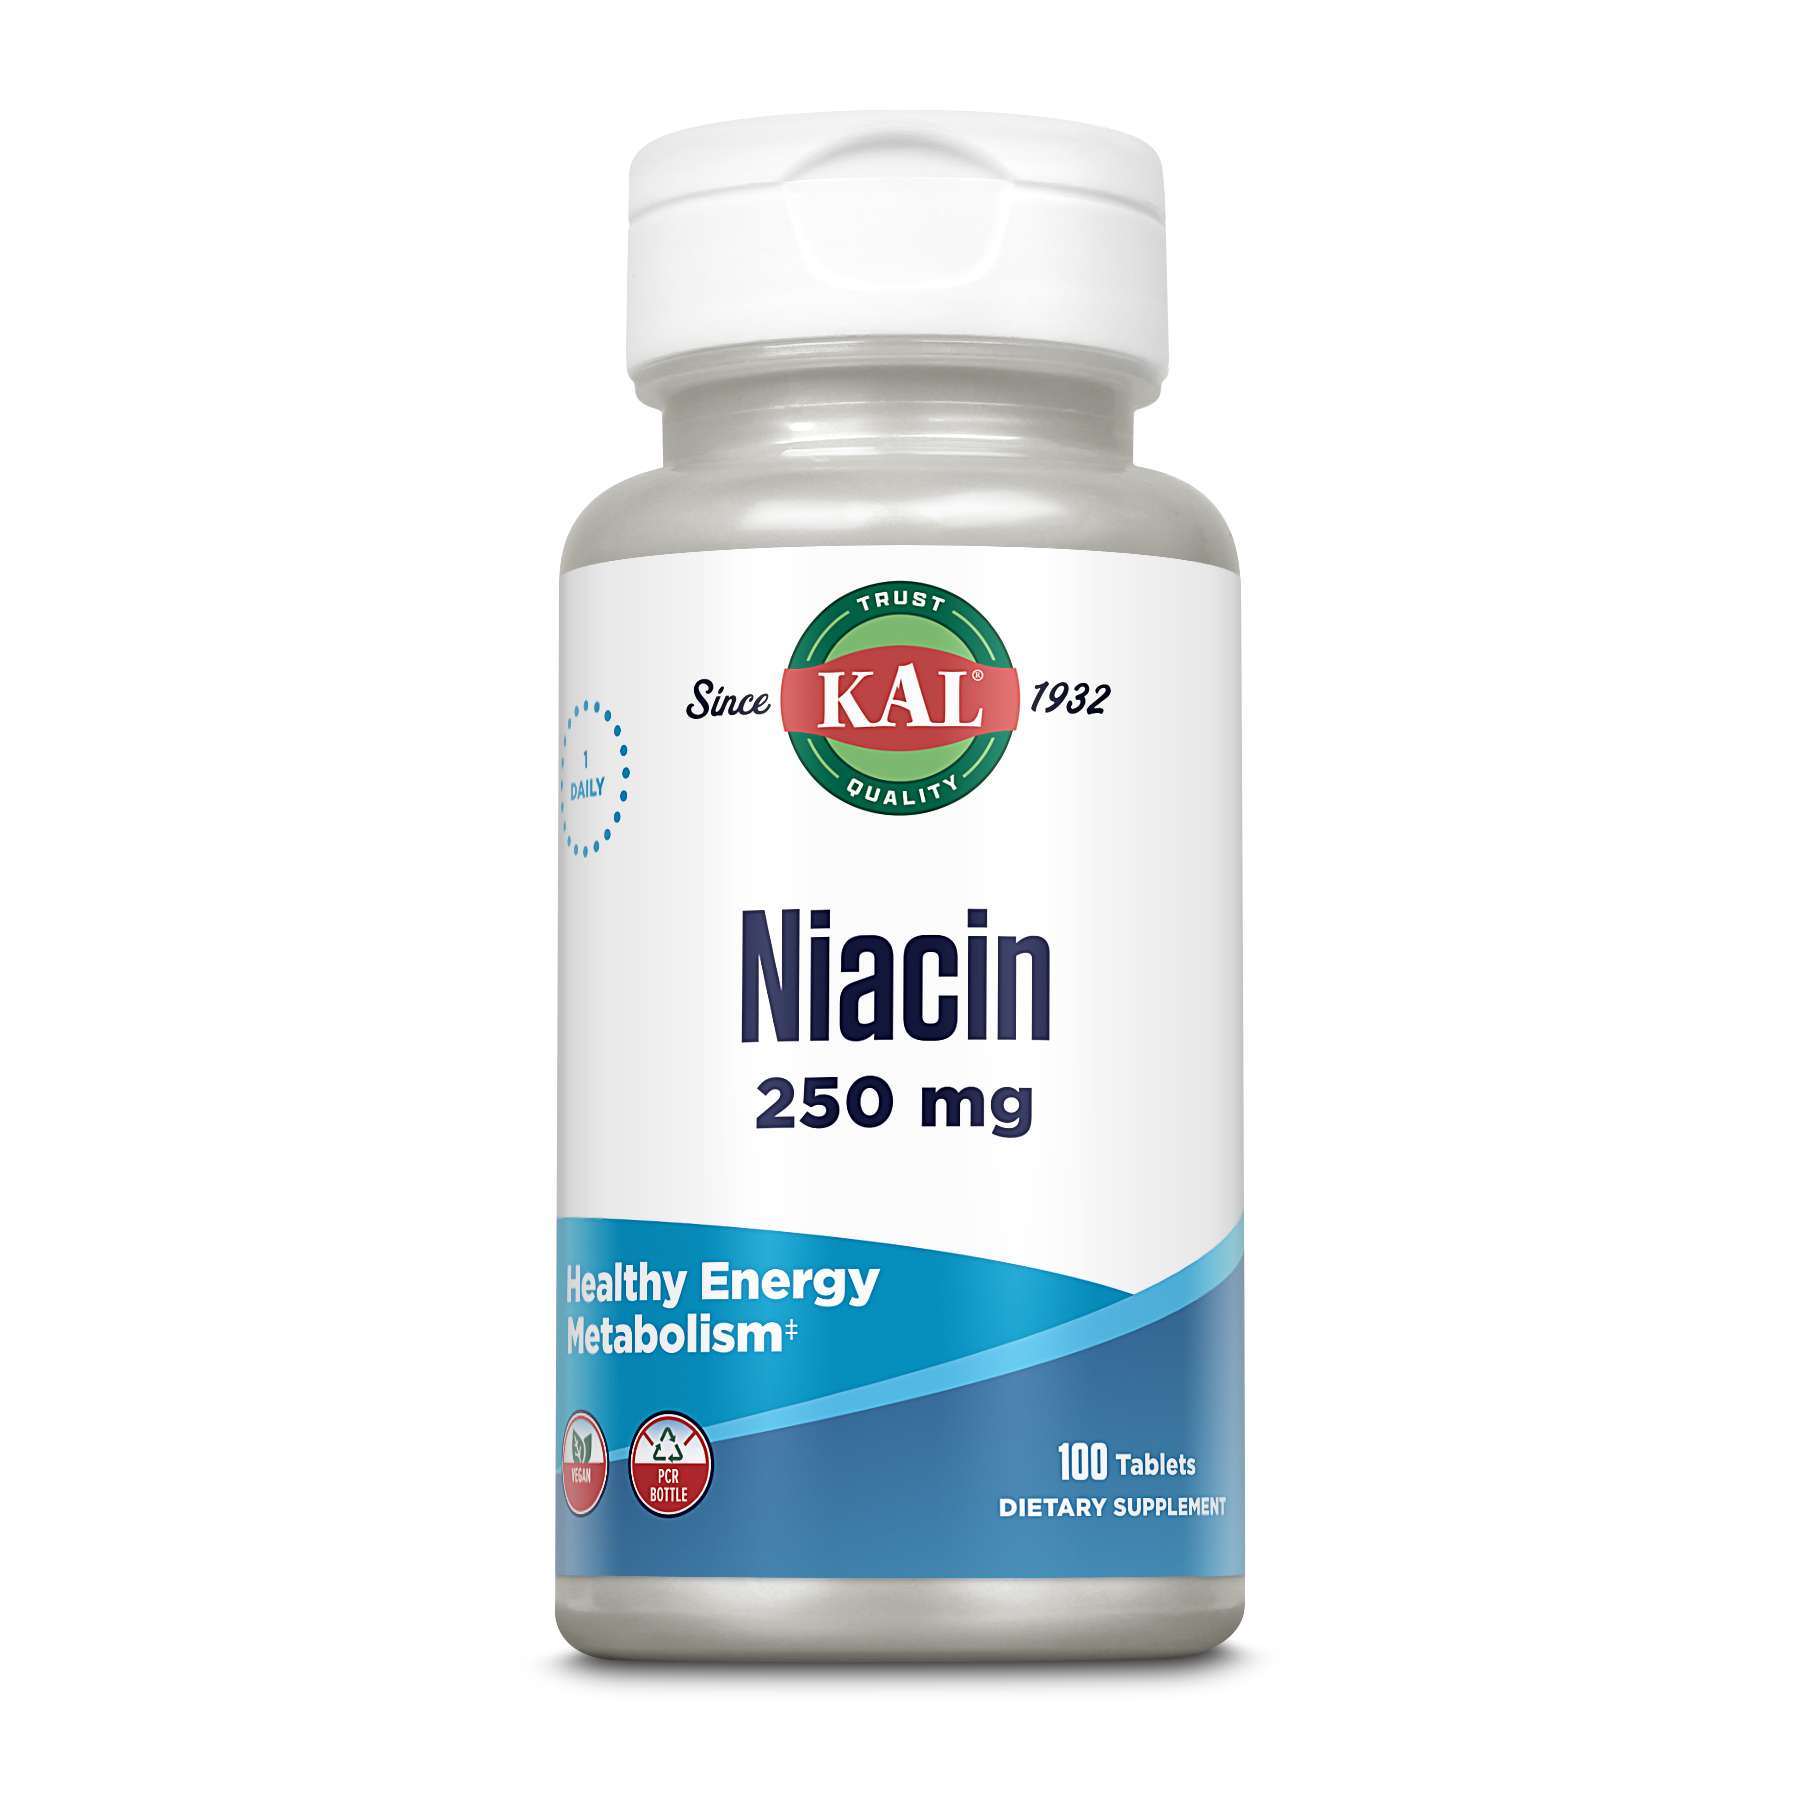 Kal - Niacin 250